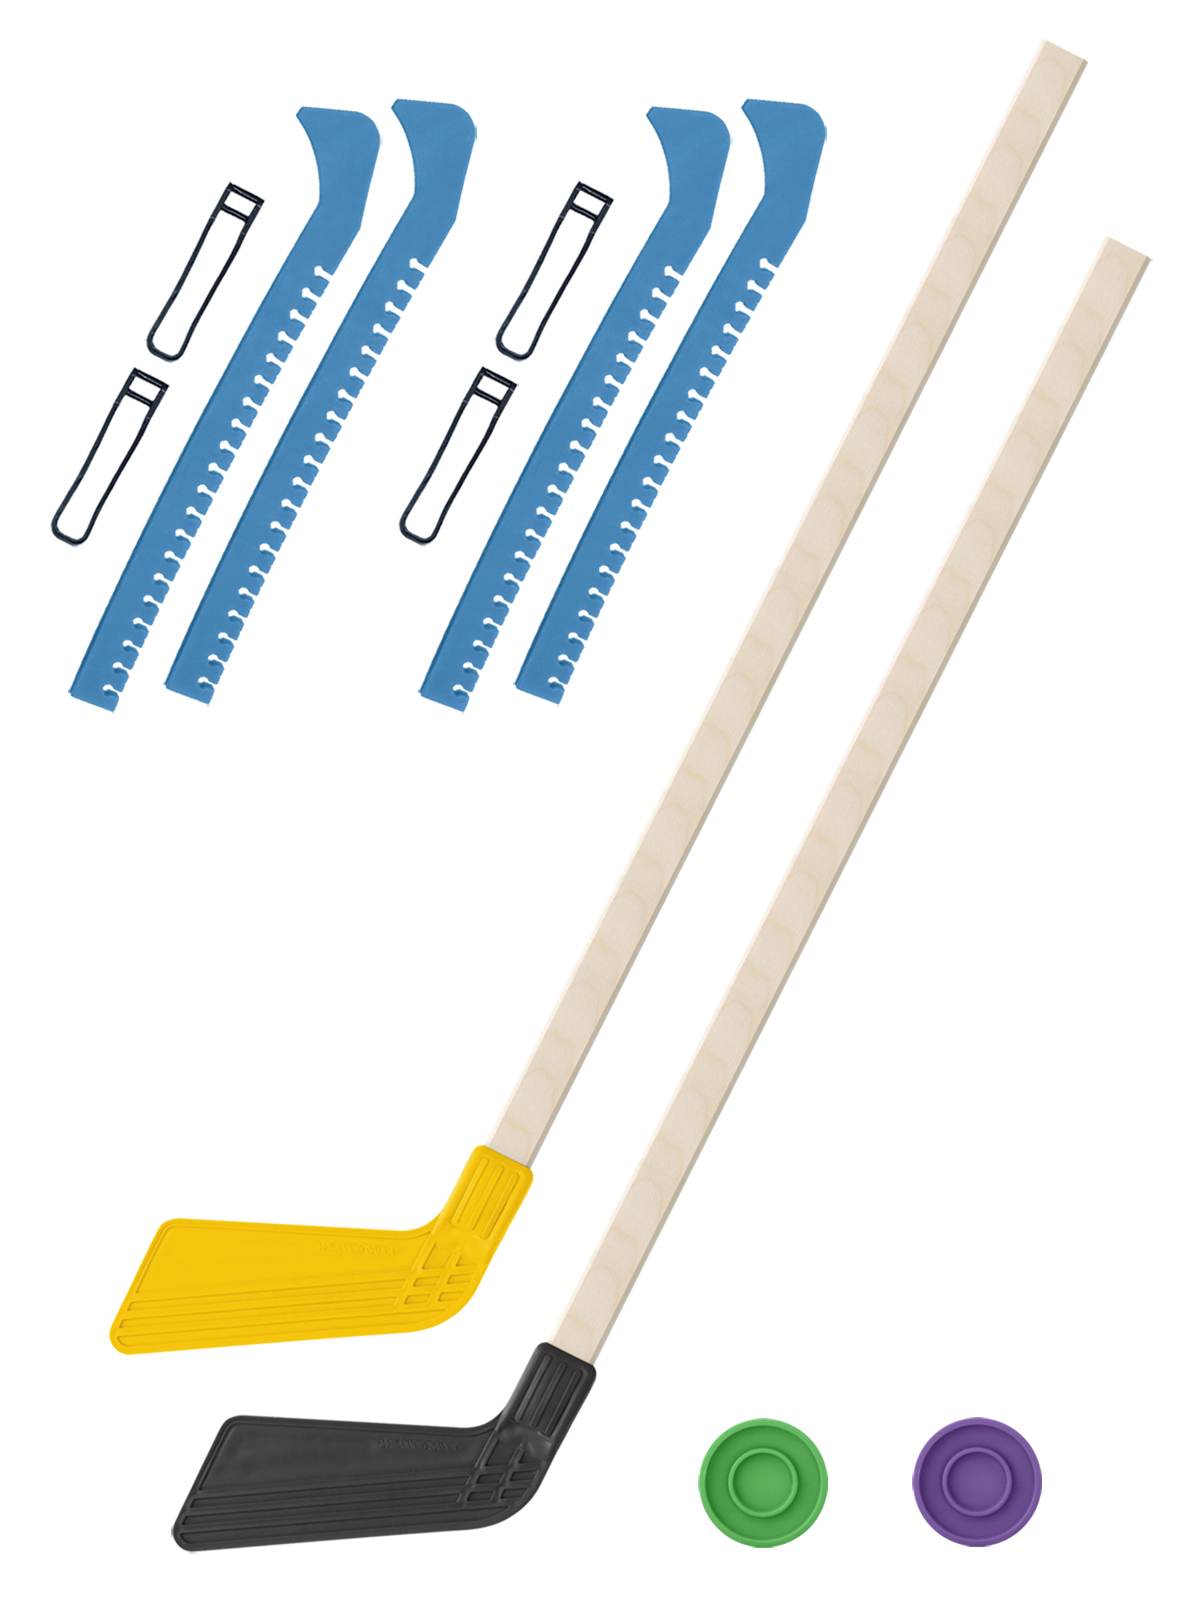 Хоккейный набор Задира-плюс клюшка детская(жел+чер)2шт+2шайбы+чехлы для коньков голуб 2шт